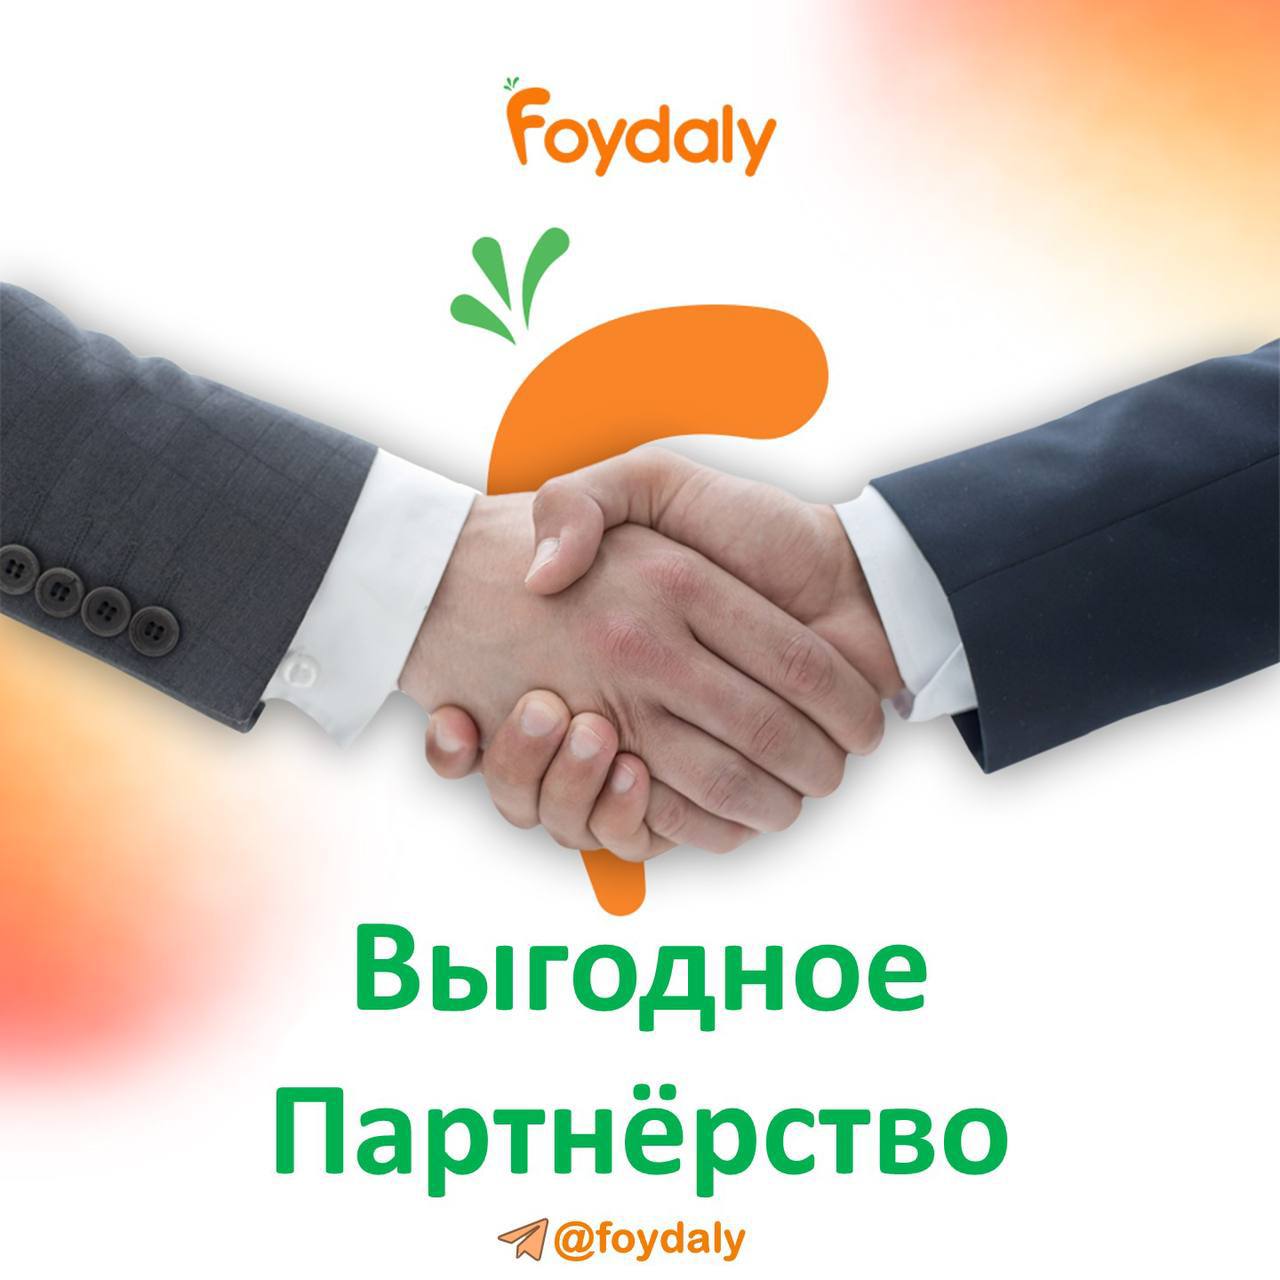 Команда foydaly призывает к  сотрудничеству супермаркетов, производителей, дистрибьюторов и других компаний